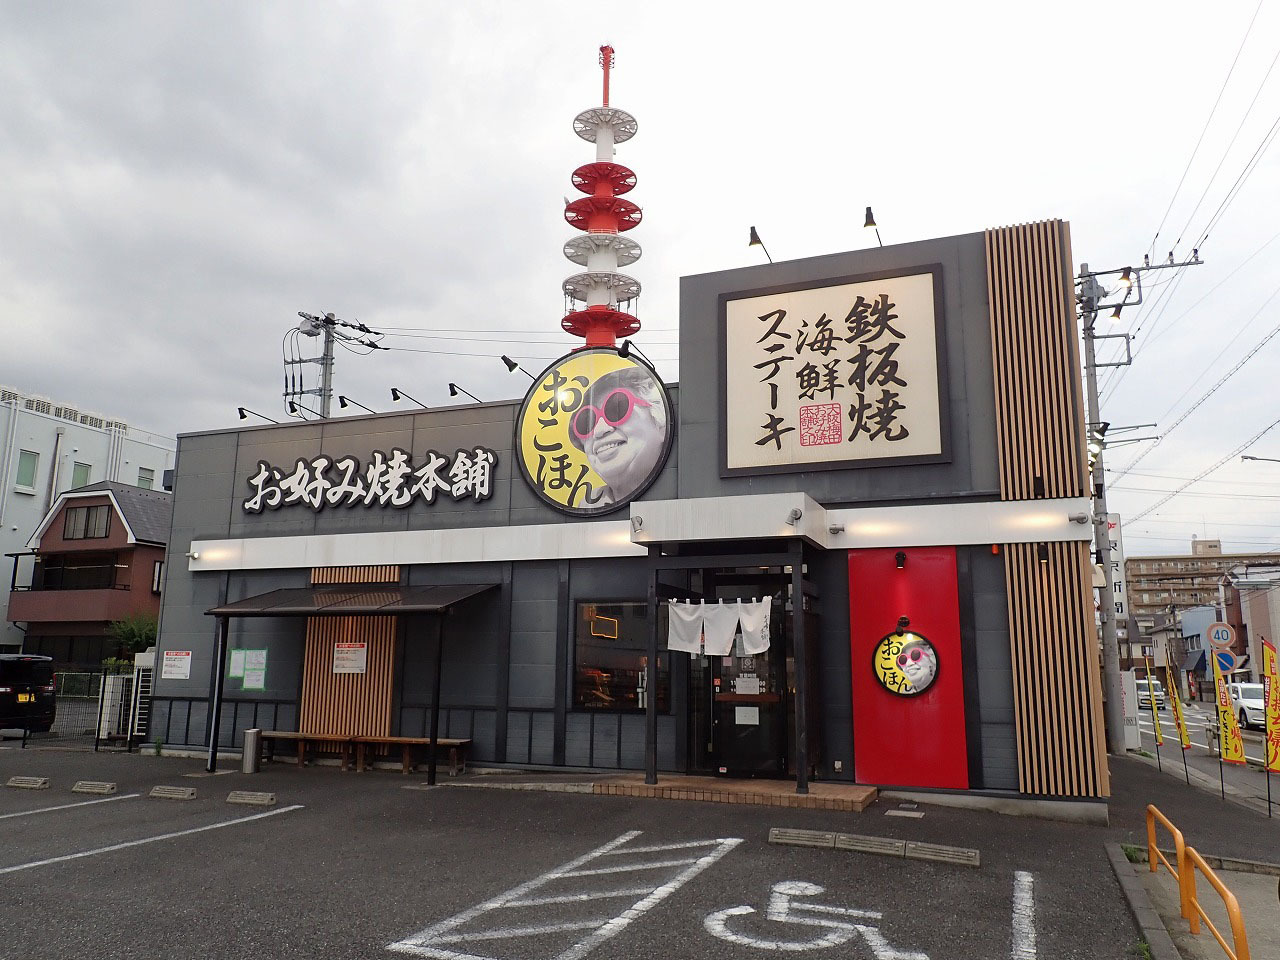 お店は埼玉県道6号（川越所沢線）沿いにあります